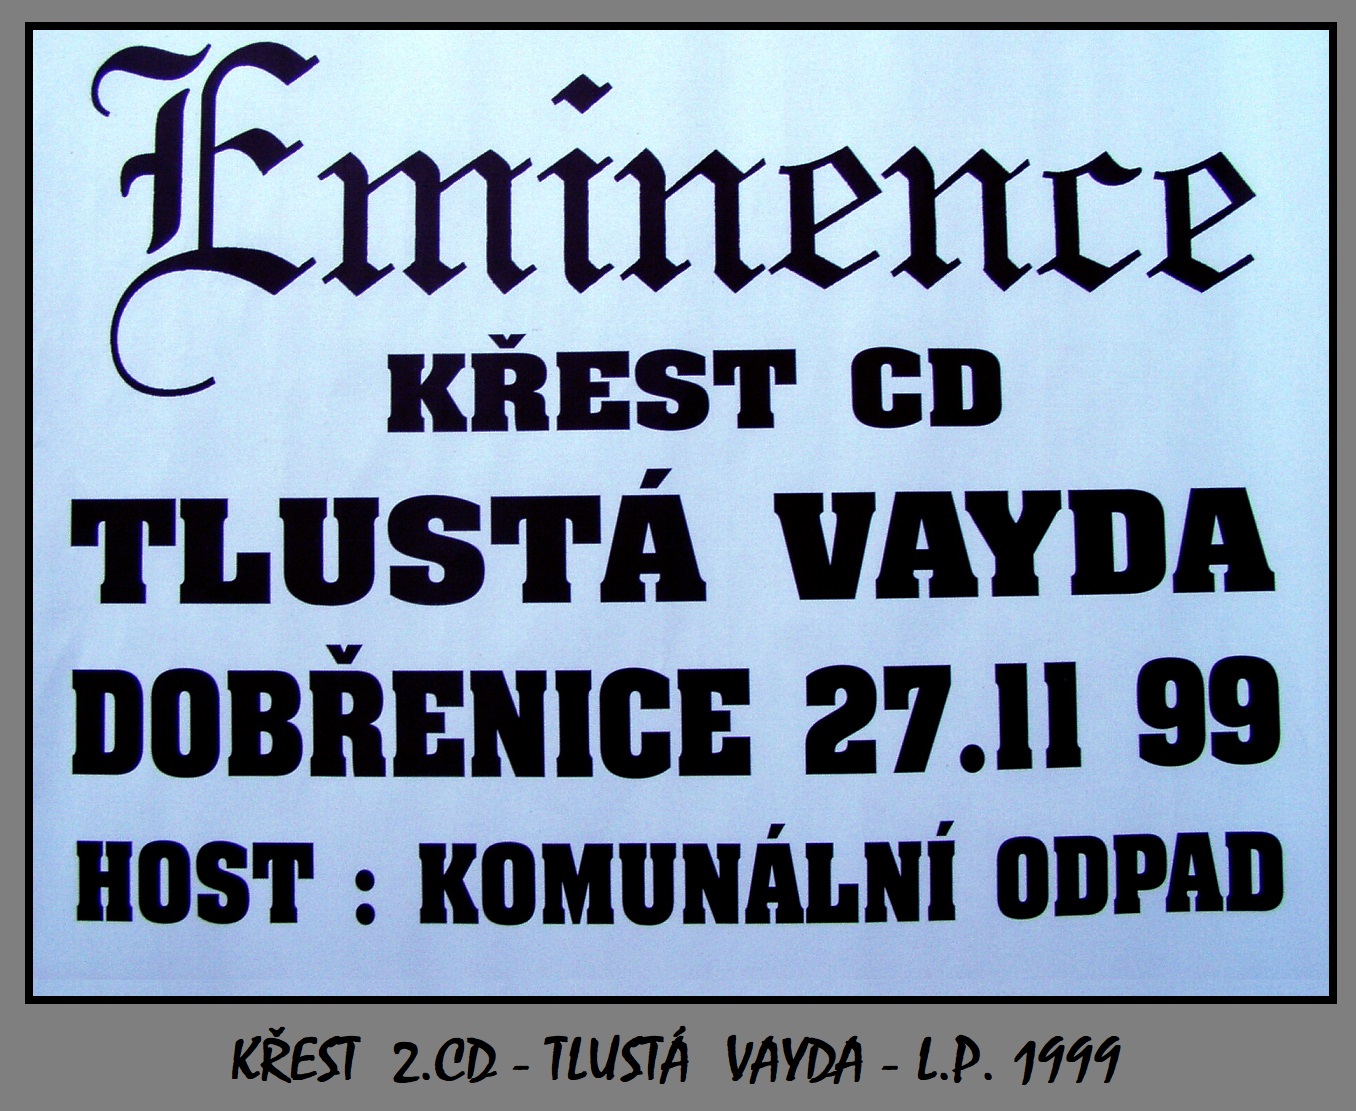 em7.1999 - EMINENCE krest 2. CD - plakat 3